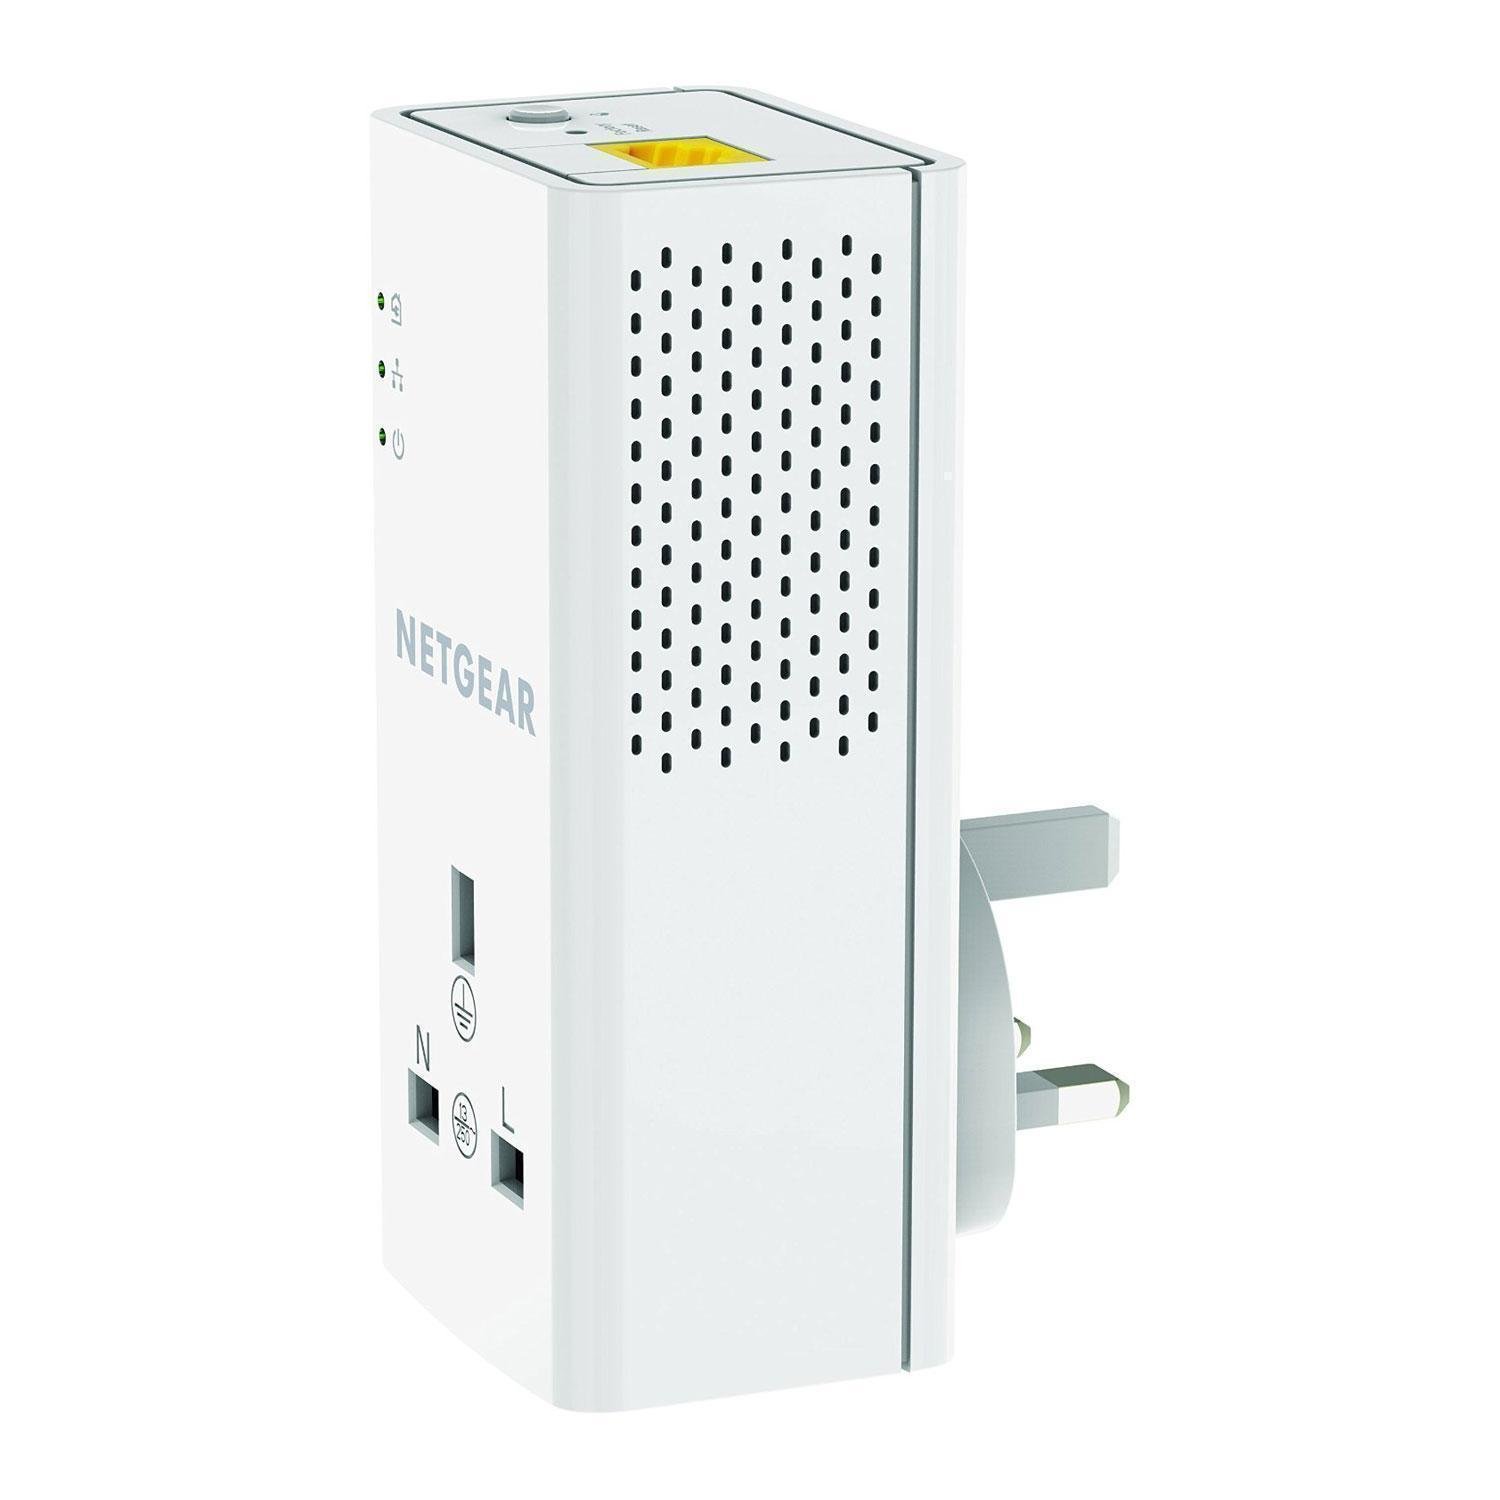 NETGEAR PLP1200-100UKS 1200Mbps Powerline Ethernet Adapter Homeplug